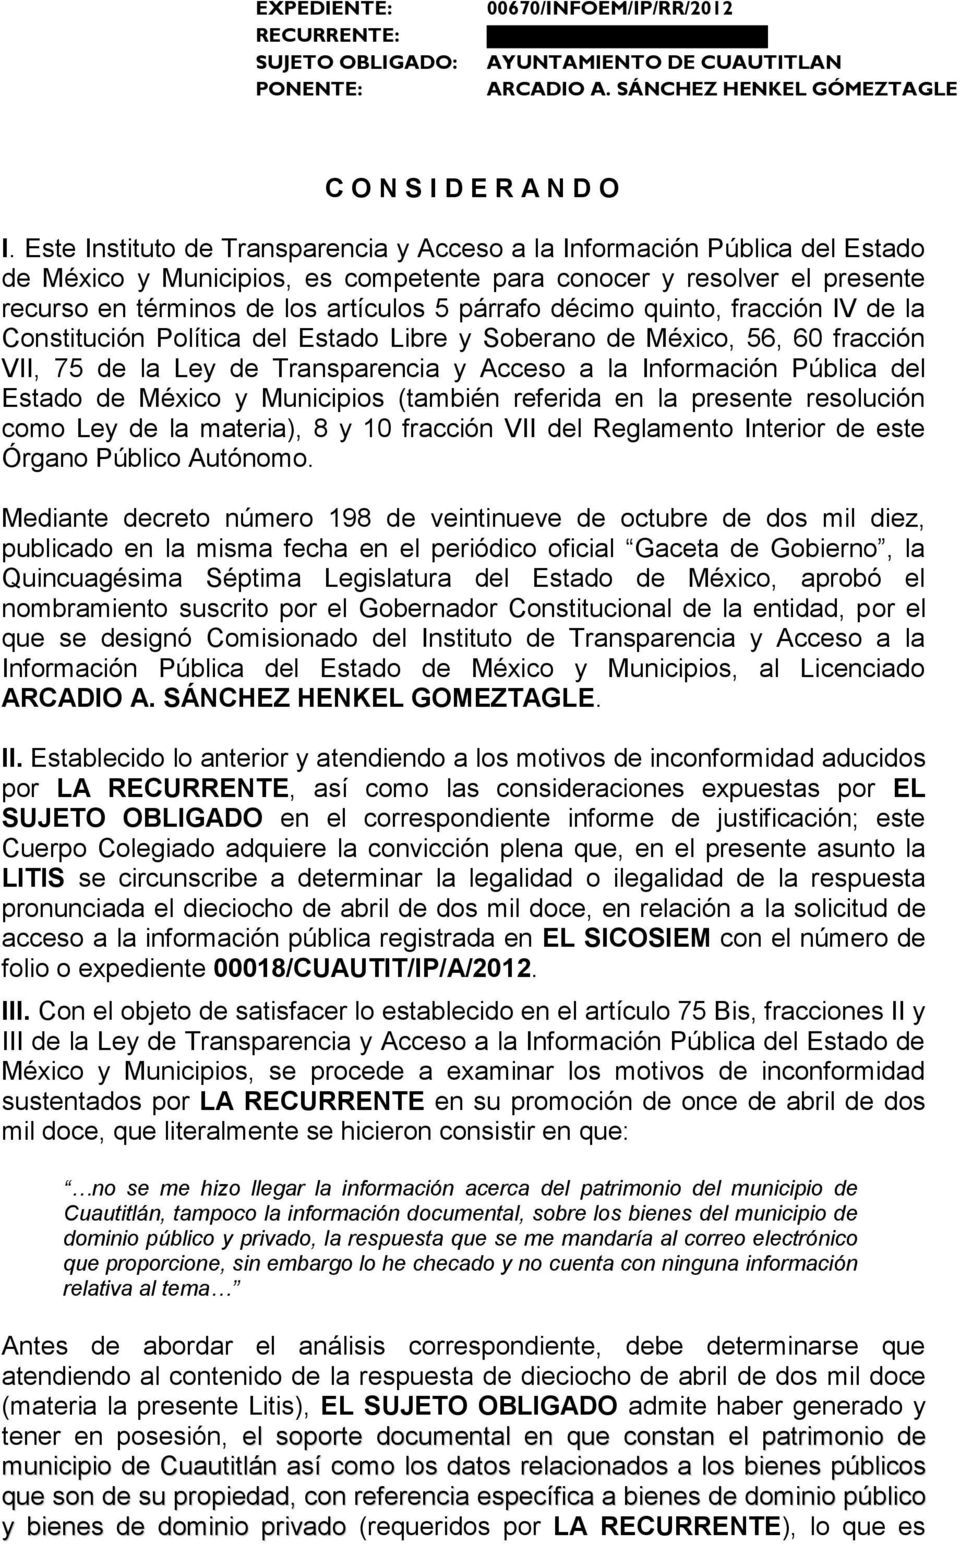 décimo quinto, fracción IV de la Constitución Política del Estado Libre y Soberano de México, 56, 60 fracción VII, 75 de la Ley de Transparencia y Acceso a la Información Pública del Estado de México